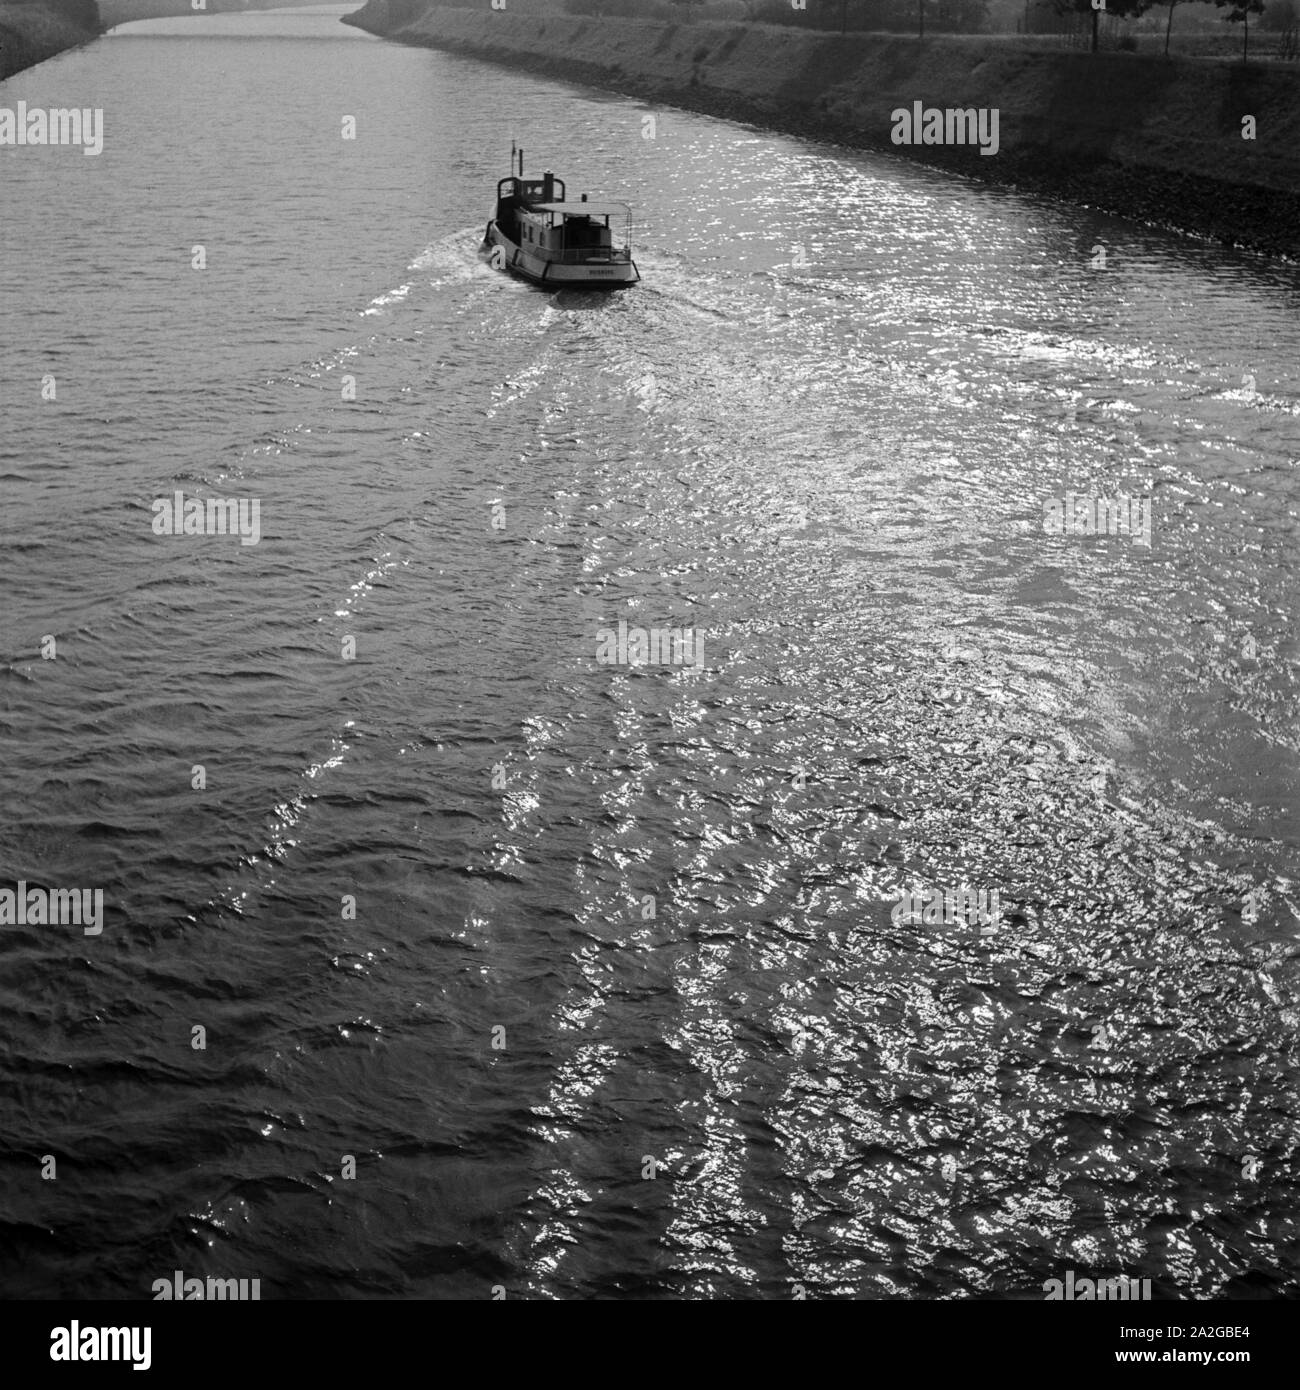 Barkasse auf der Ruhr bei Oberhausen, Deutschland 1930er Jahre. Barge on the river Ruhr at Oberhausen, Germany 1930. Stock Photo